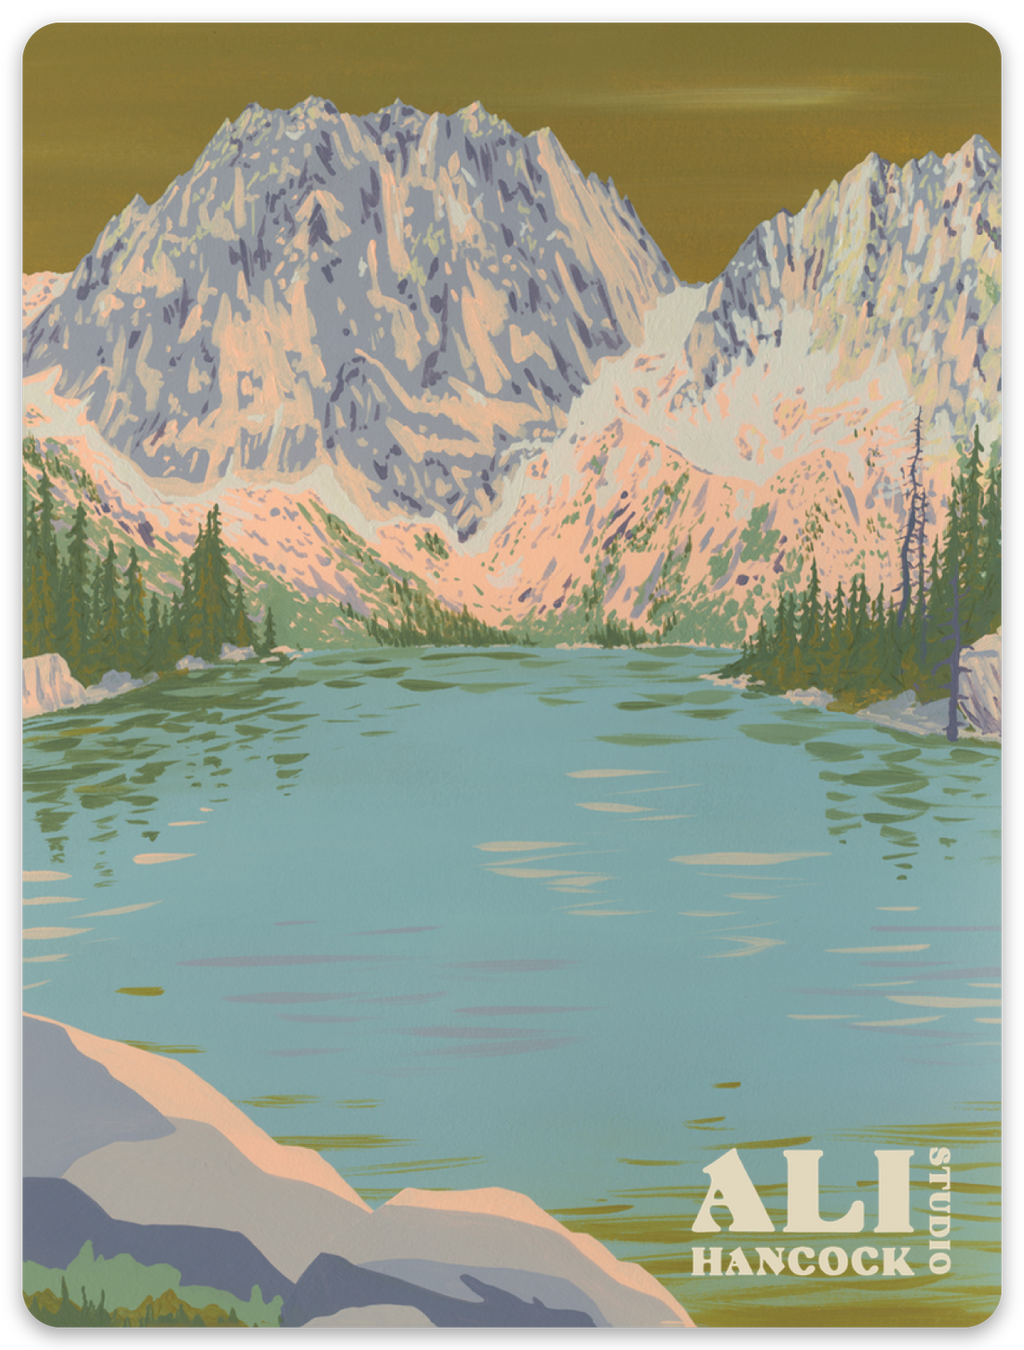 Colchuck Lake Sticker